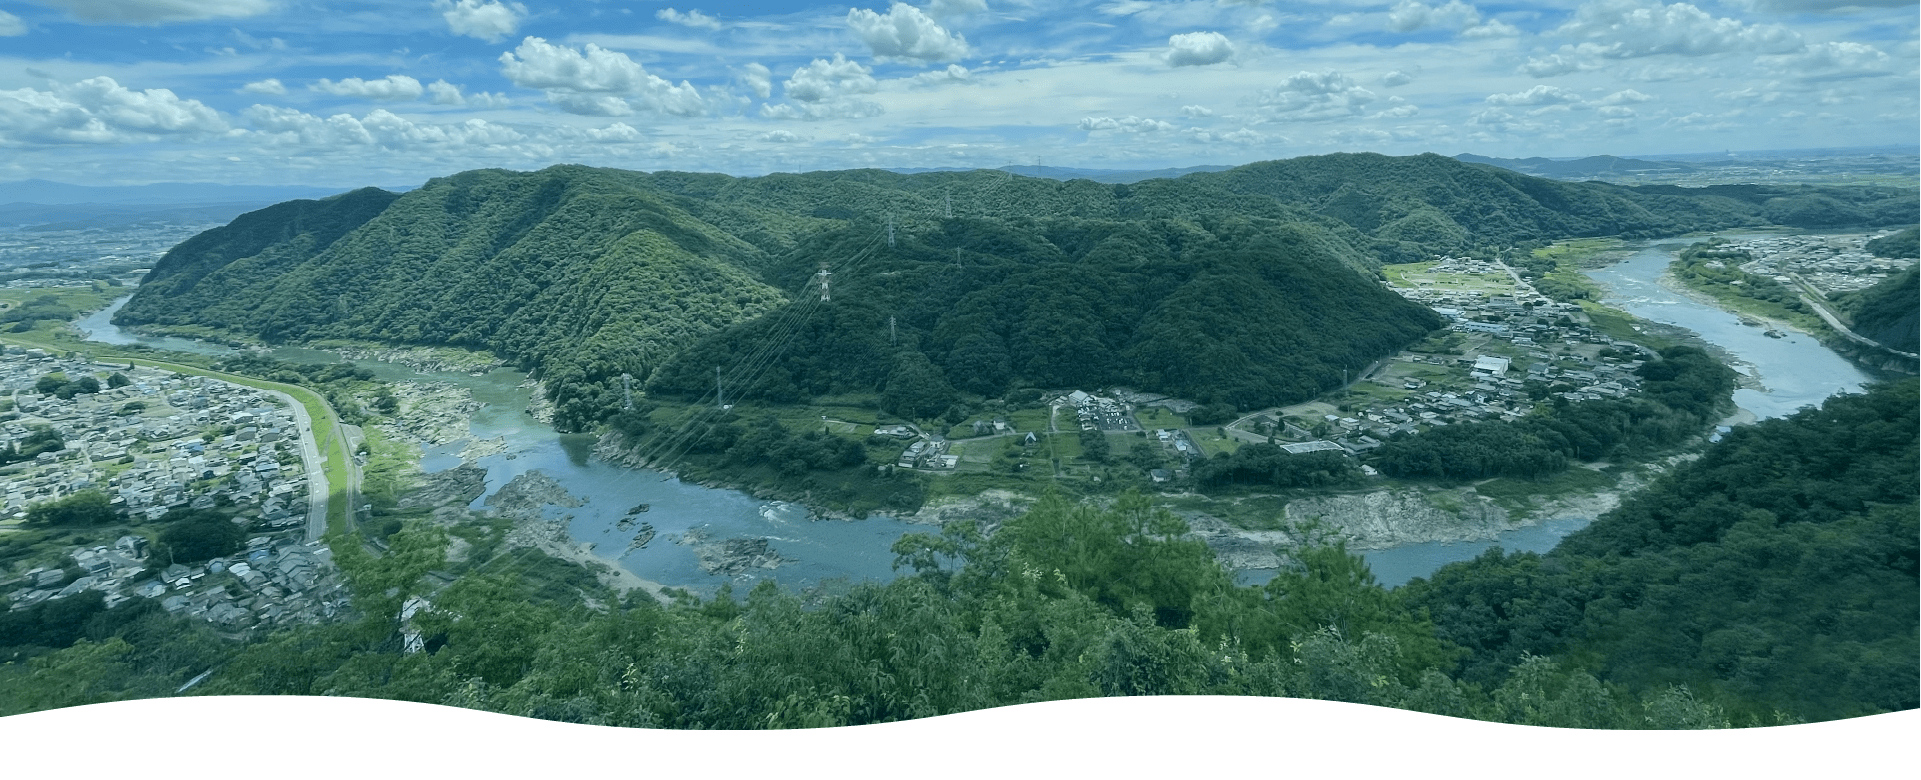 木曽川 River to Summit 2022